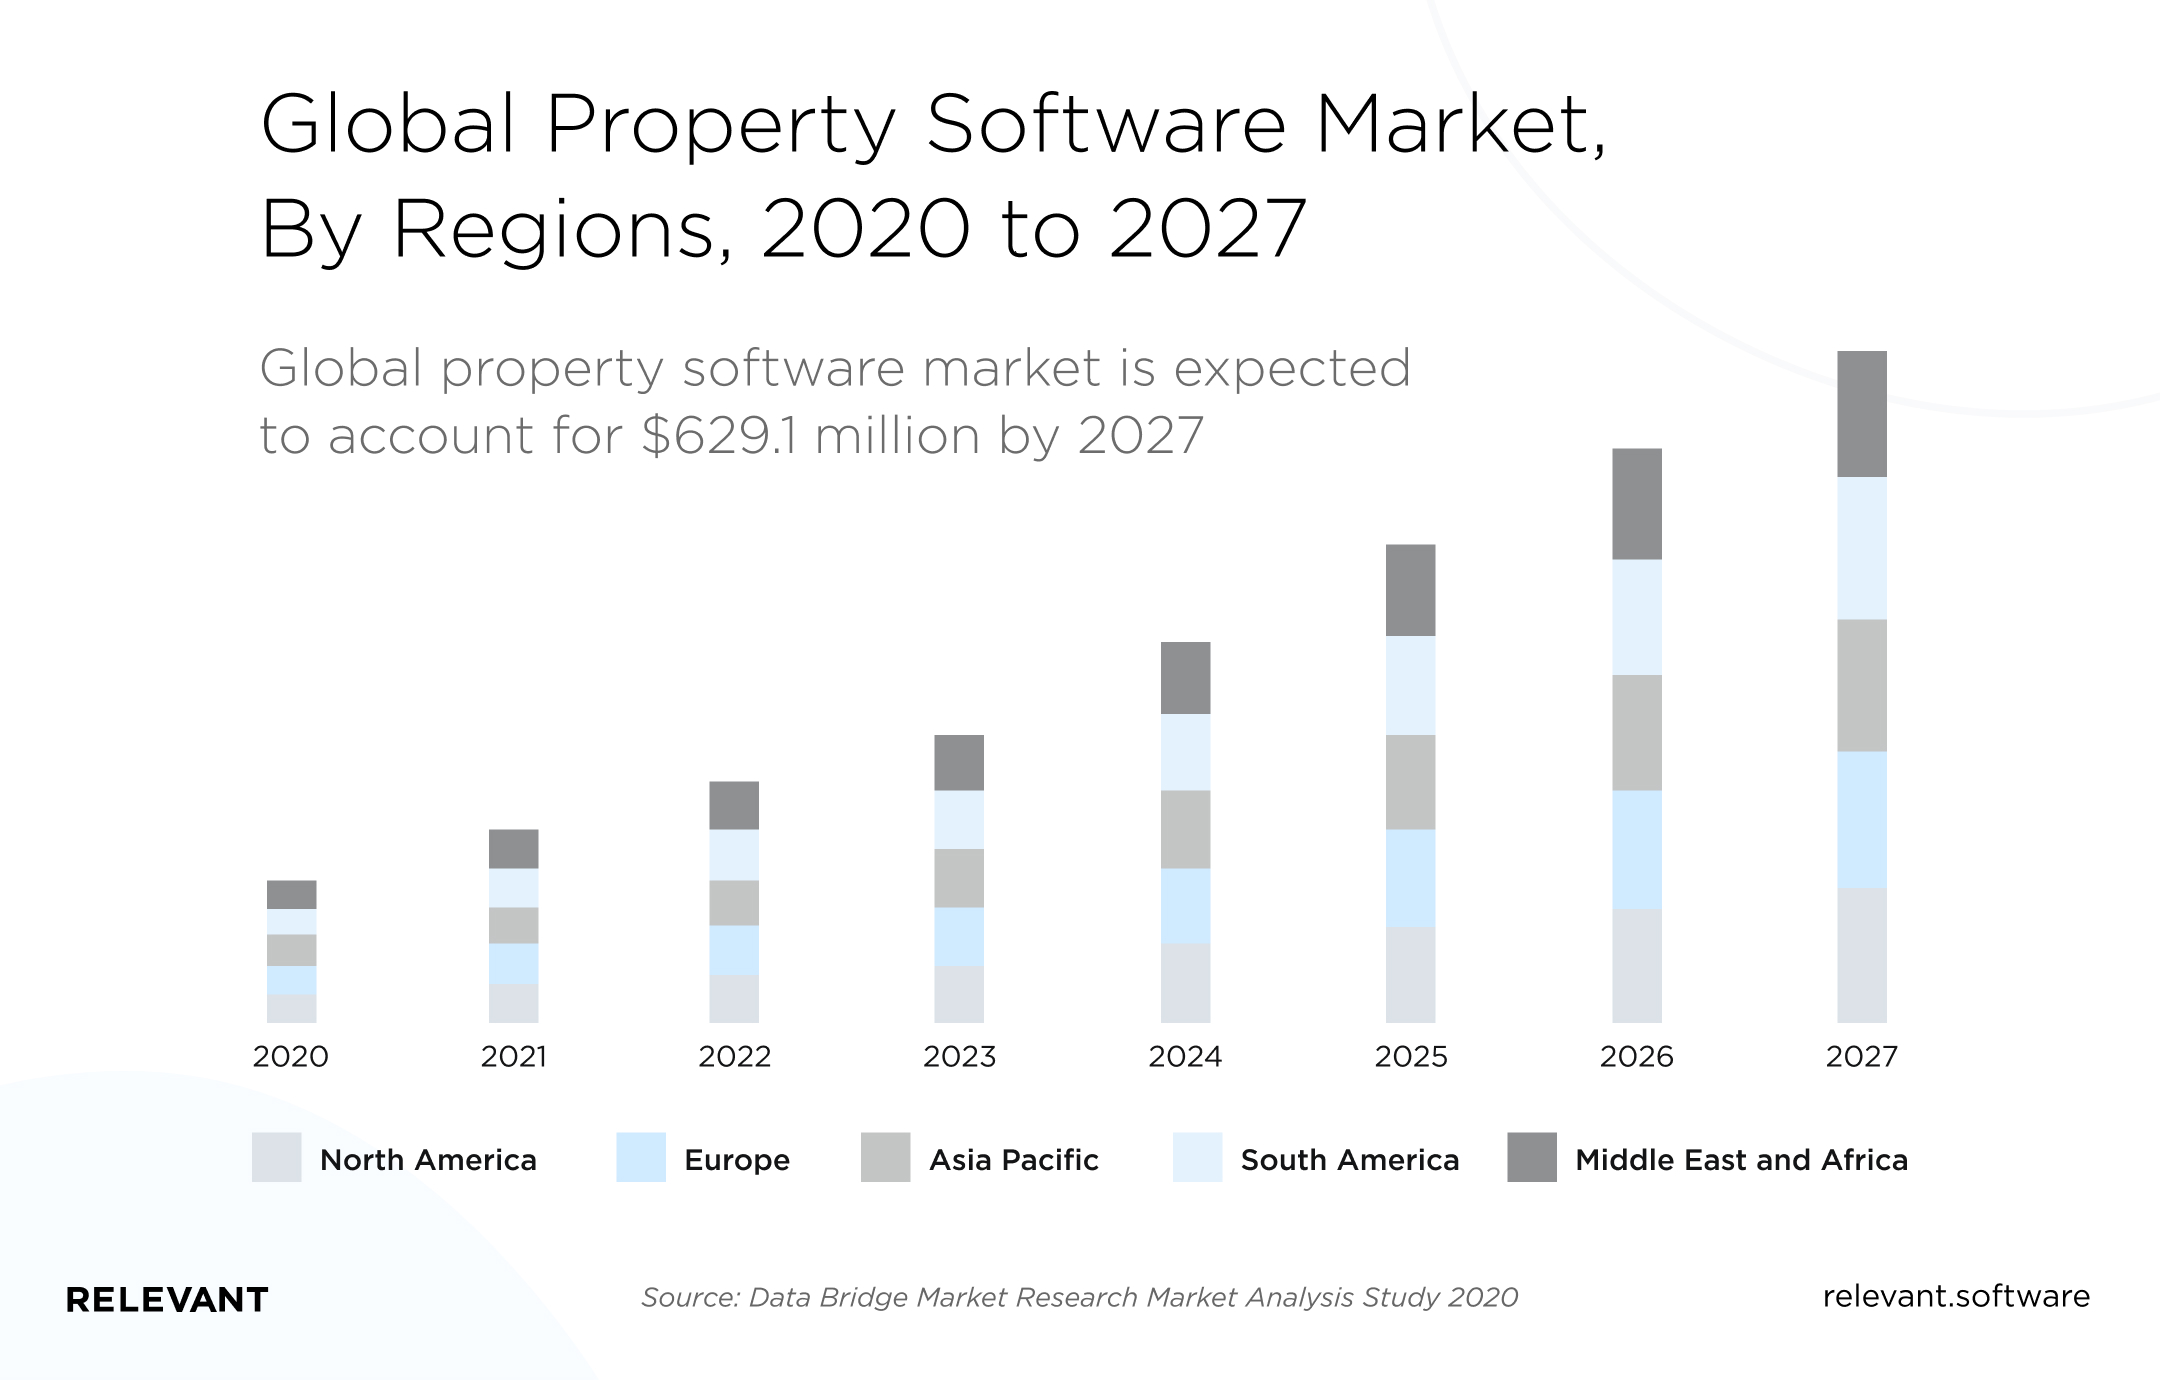 Global property software market